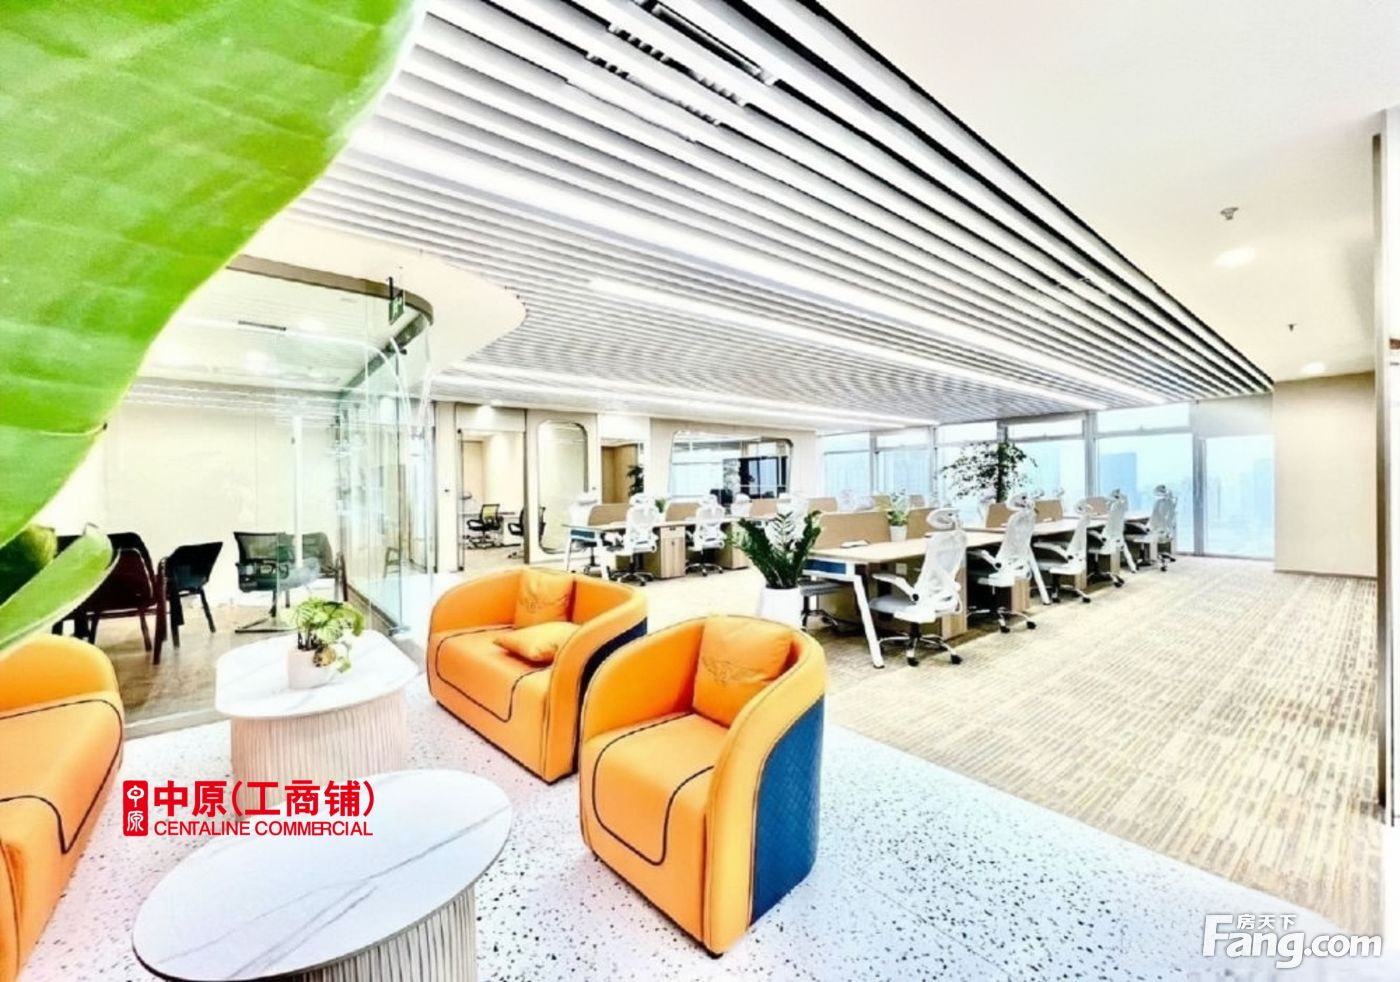 淮海中路商圈丨上海广场丨精装280平带家具丨对电梯丨香港广场